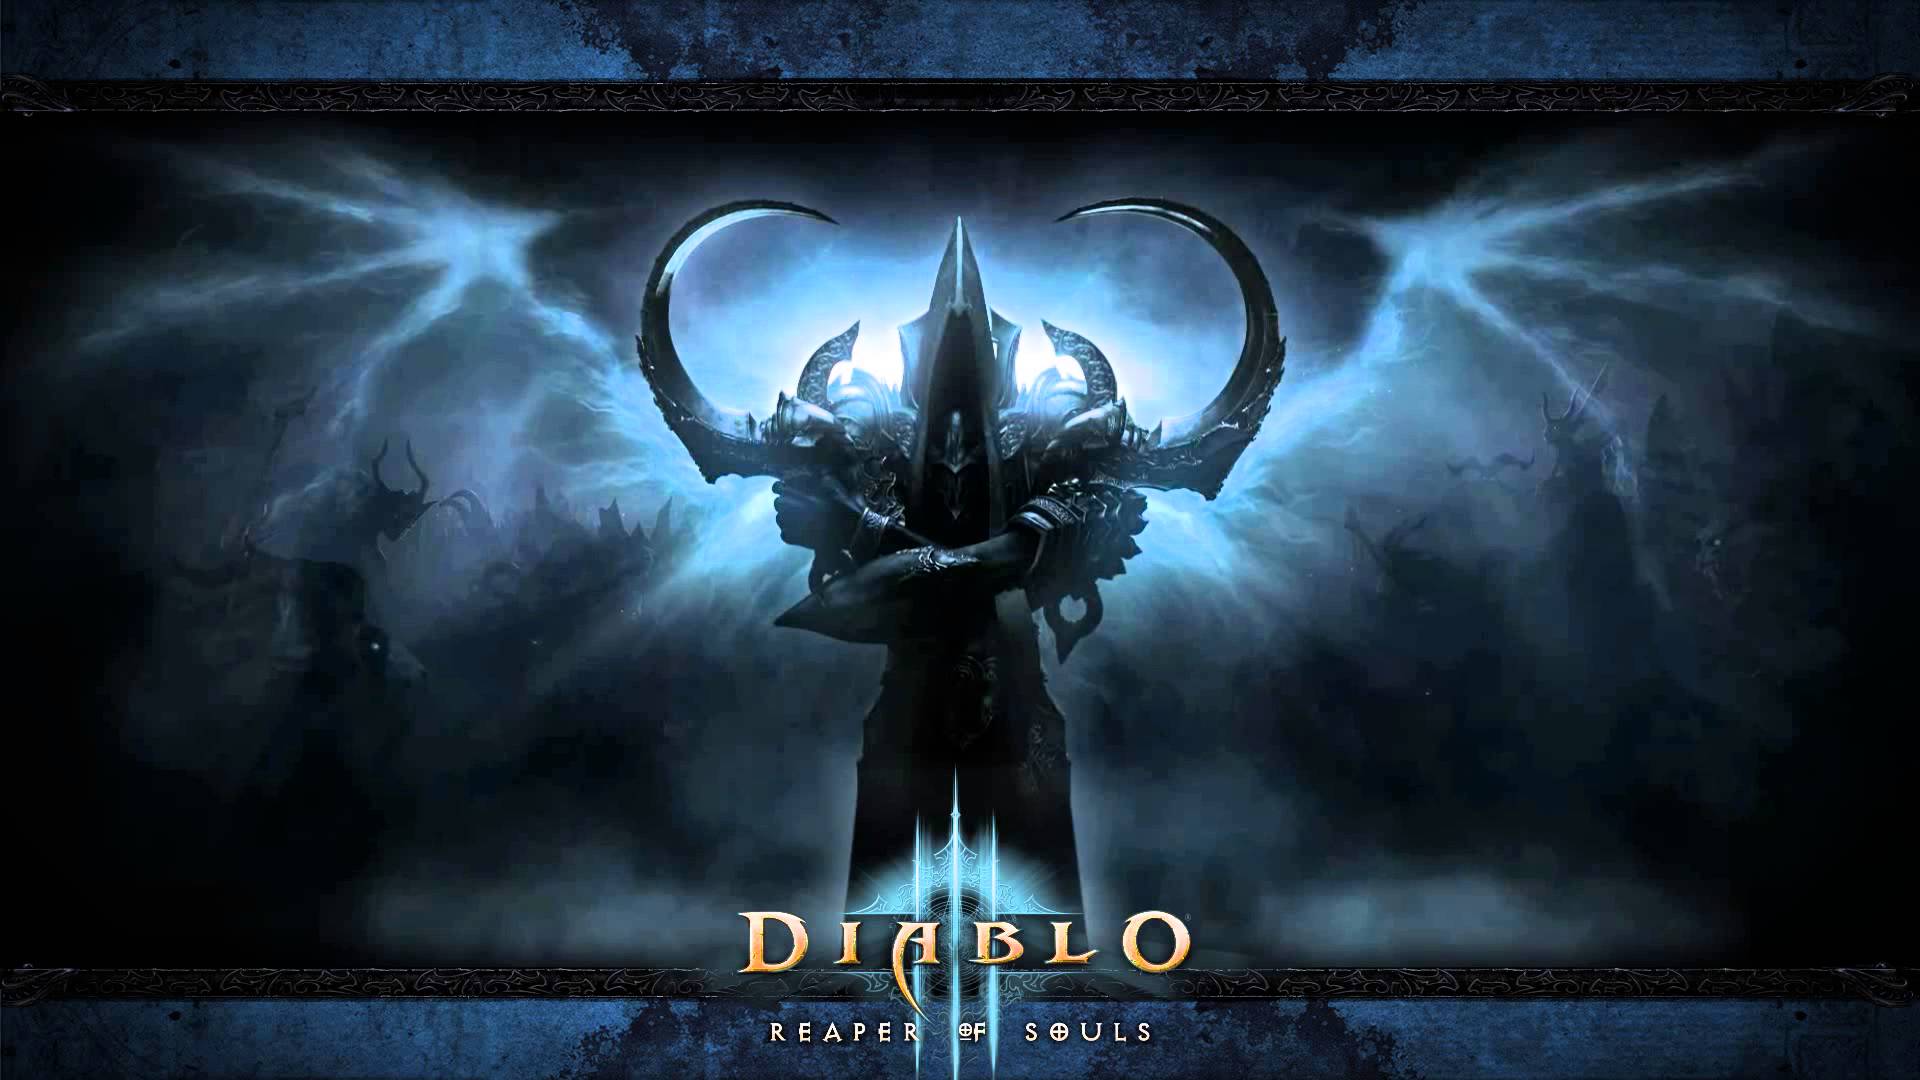 Diablo 3 - Reaper of Souls - Animated Wallpaper HD - YouTube